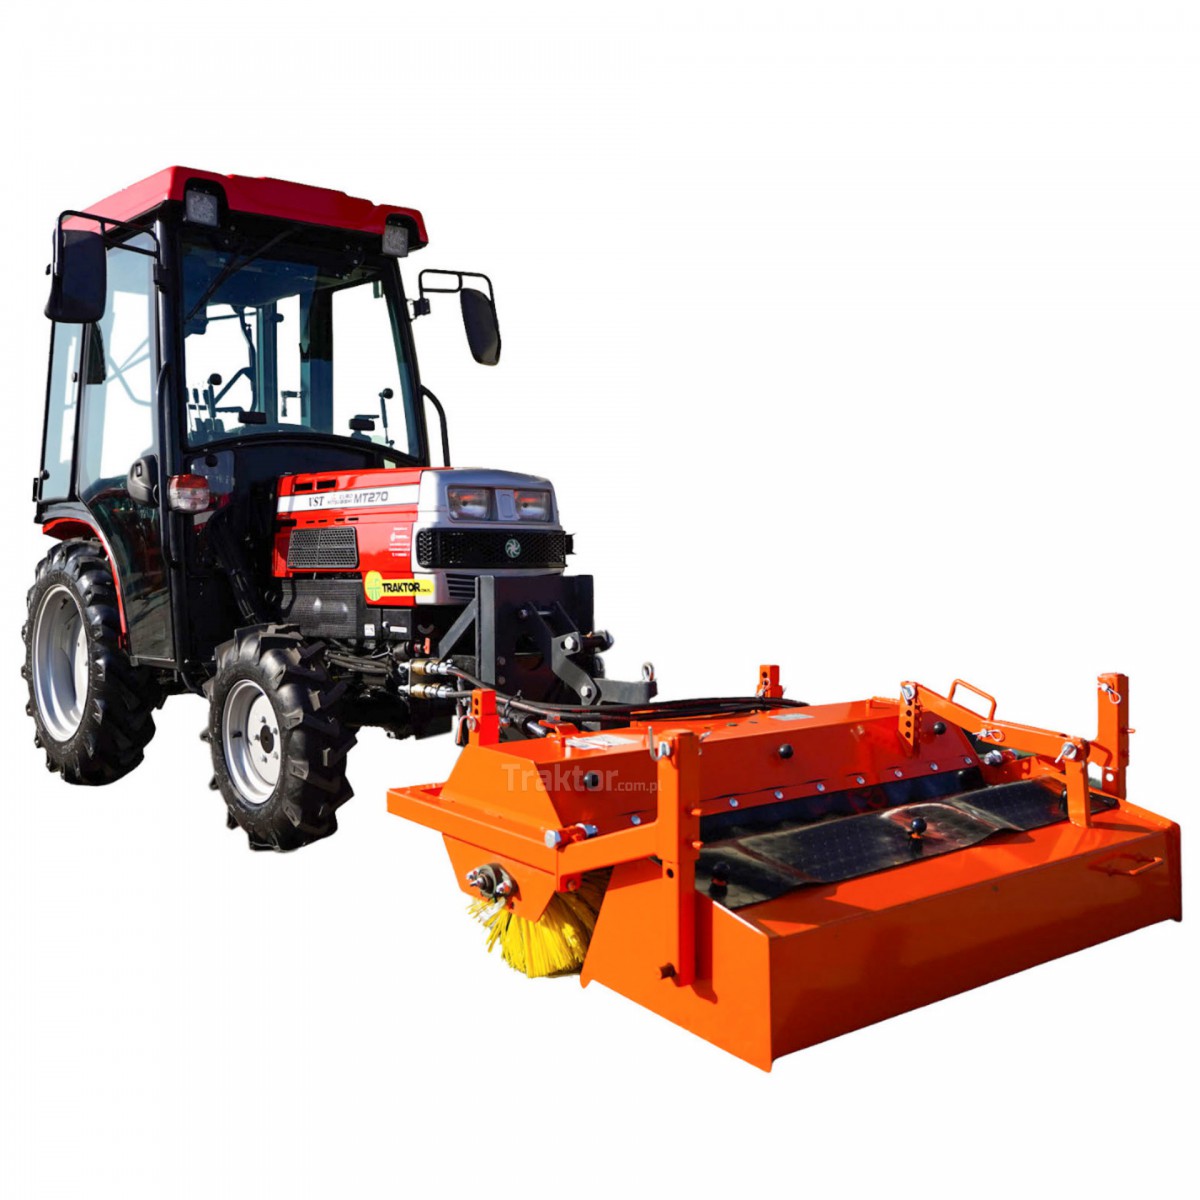 VST MT270 4x4 - 27KM/CAB + barredora 120 cm para tractor Sanko con cesta